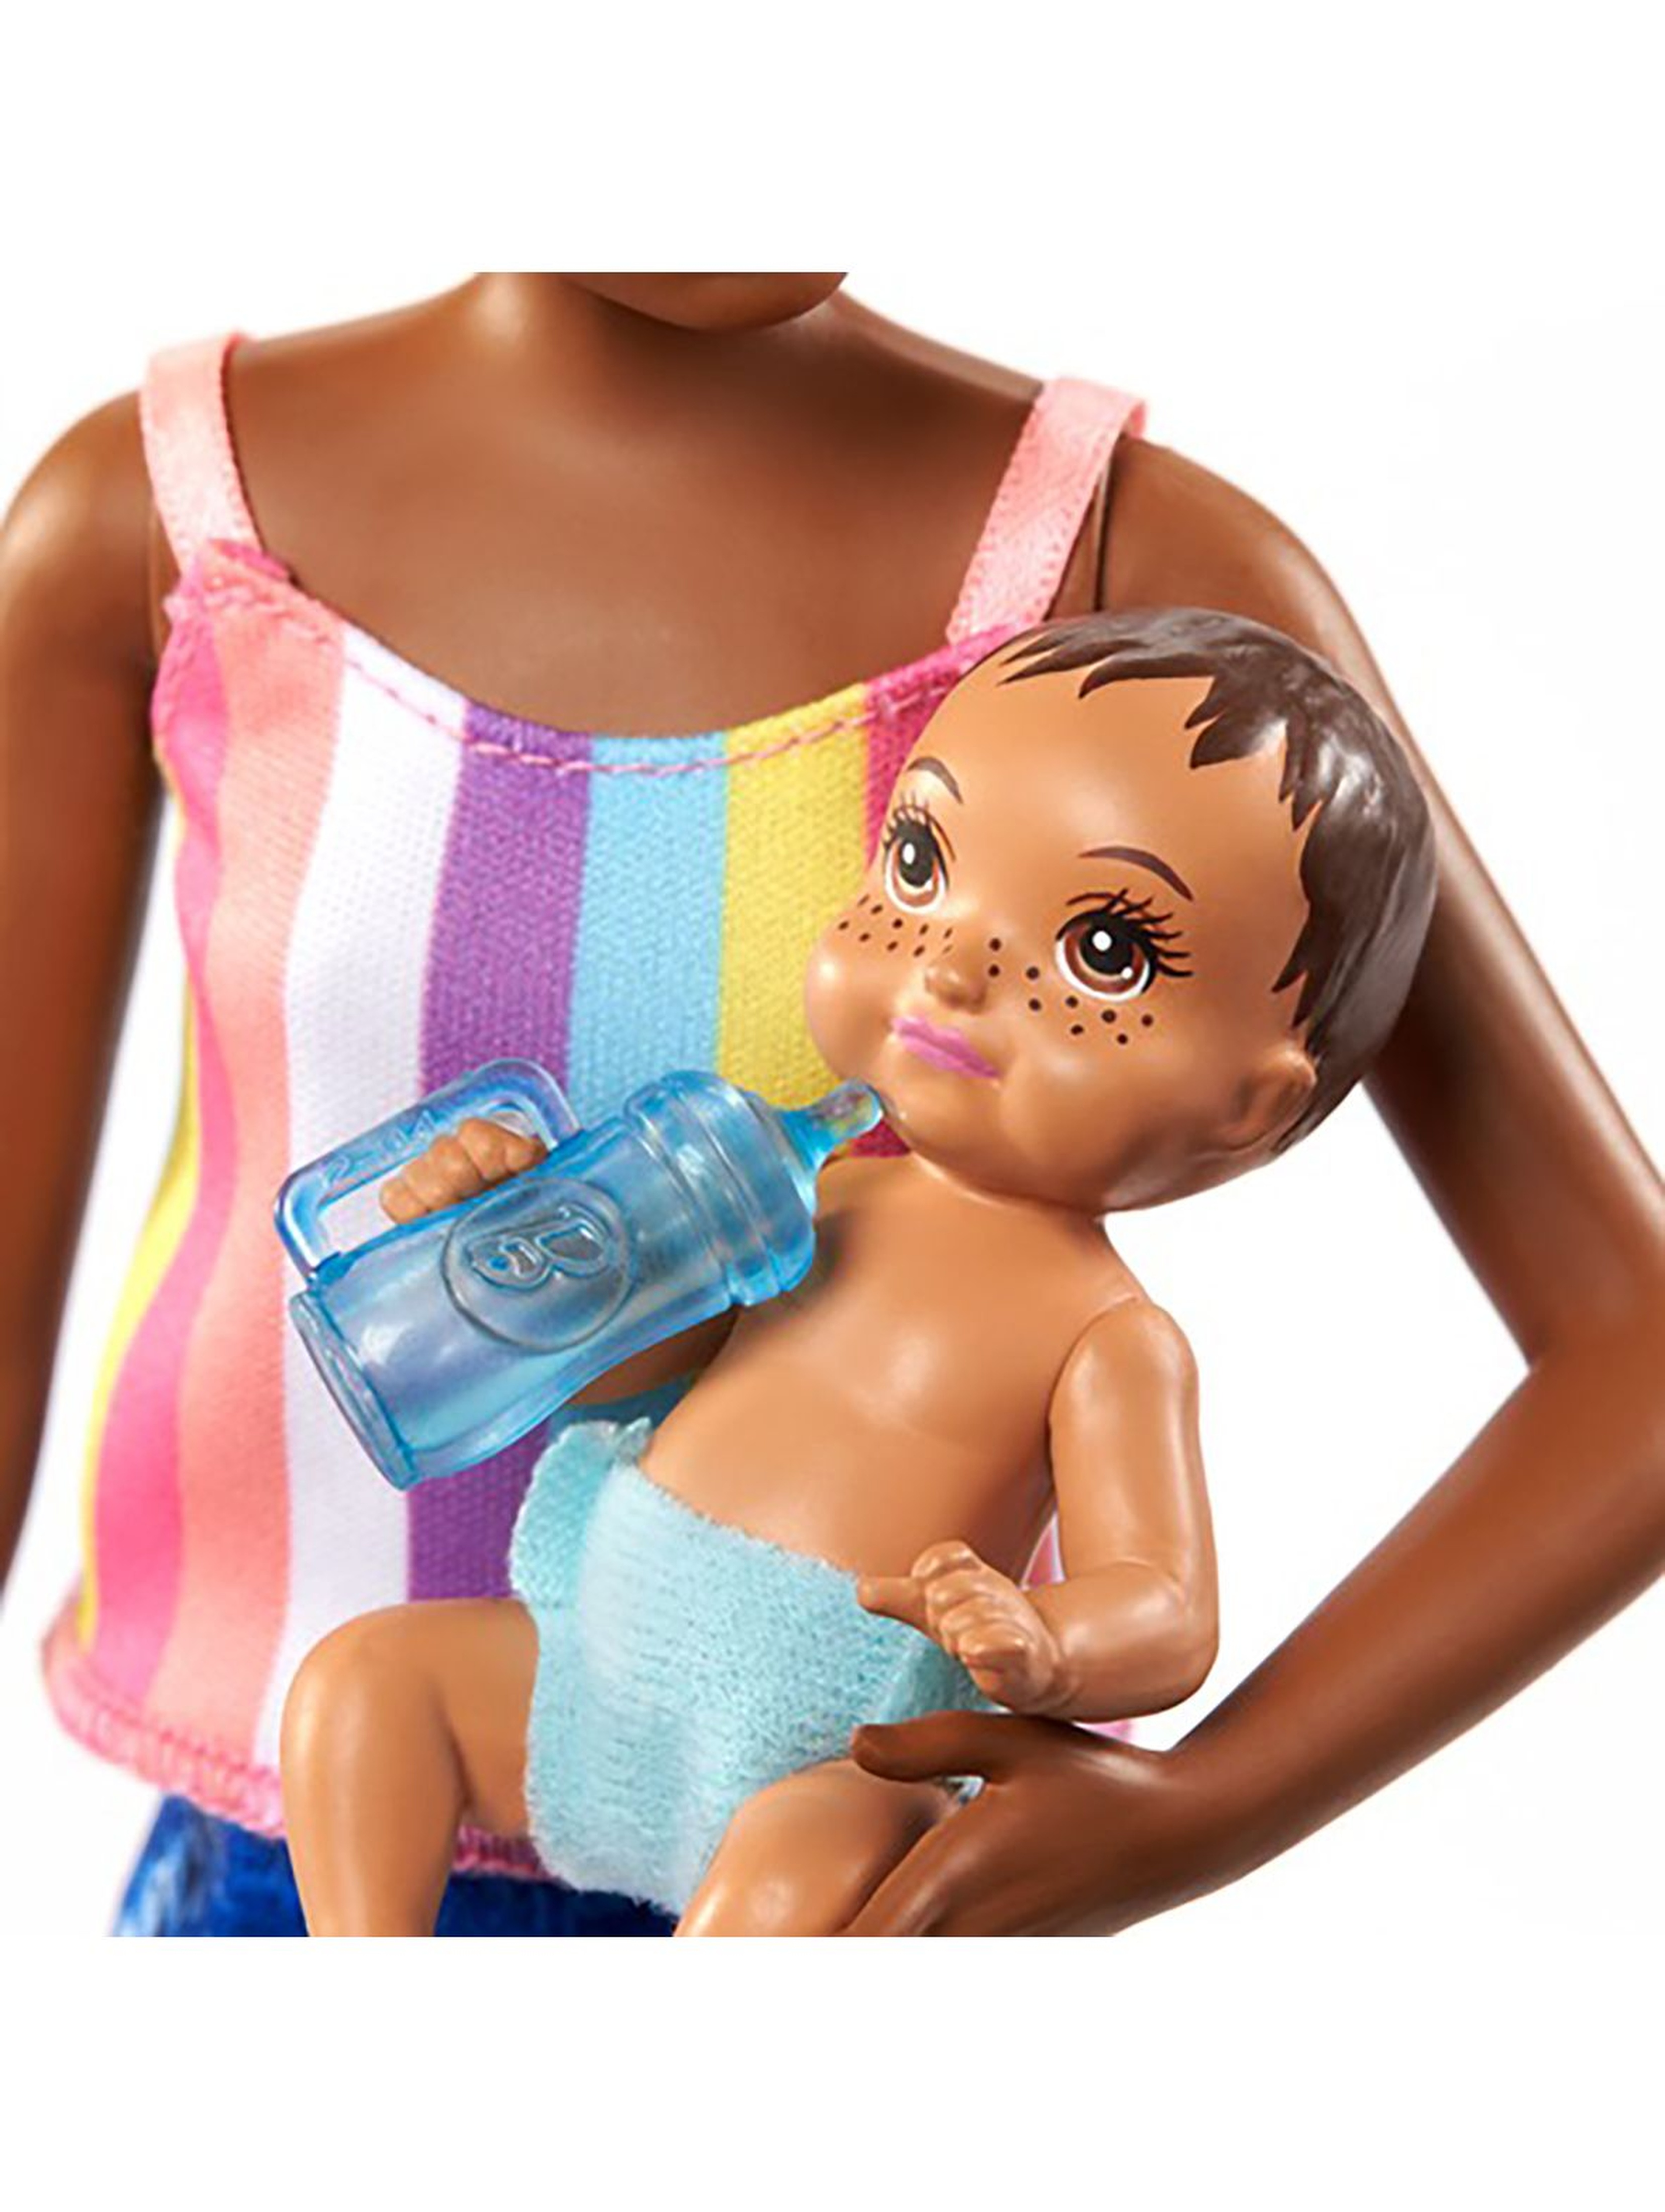 Barbie Opiekunka Lalka brunetka + bobas + akcesoria wiek 3+